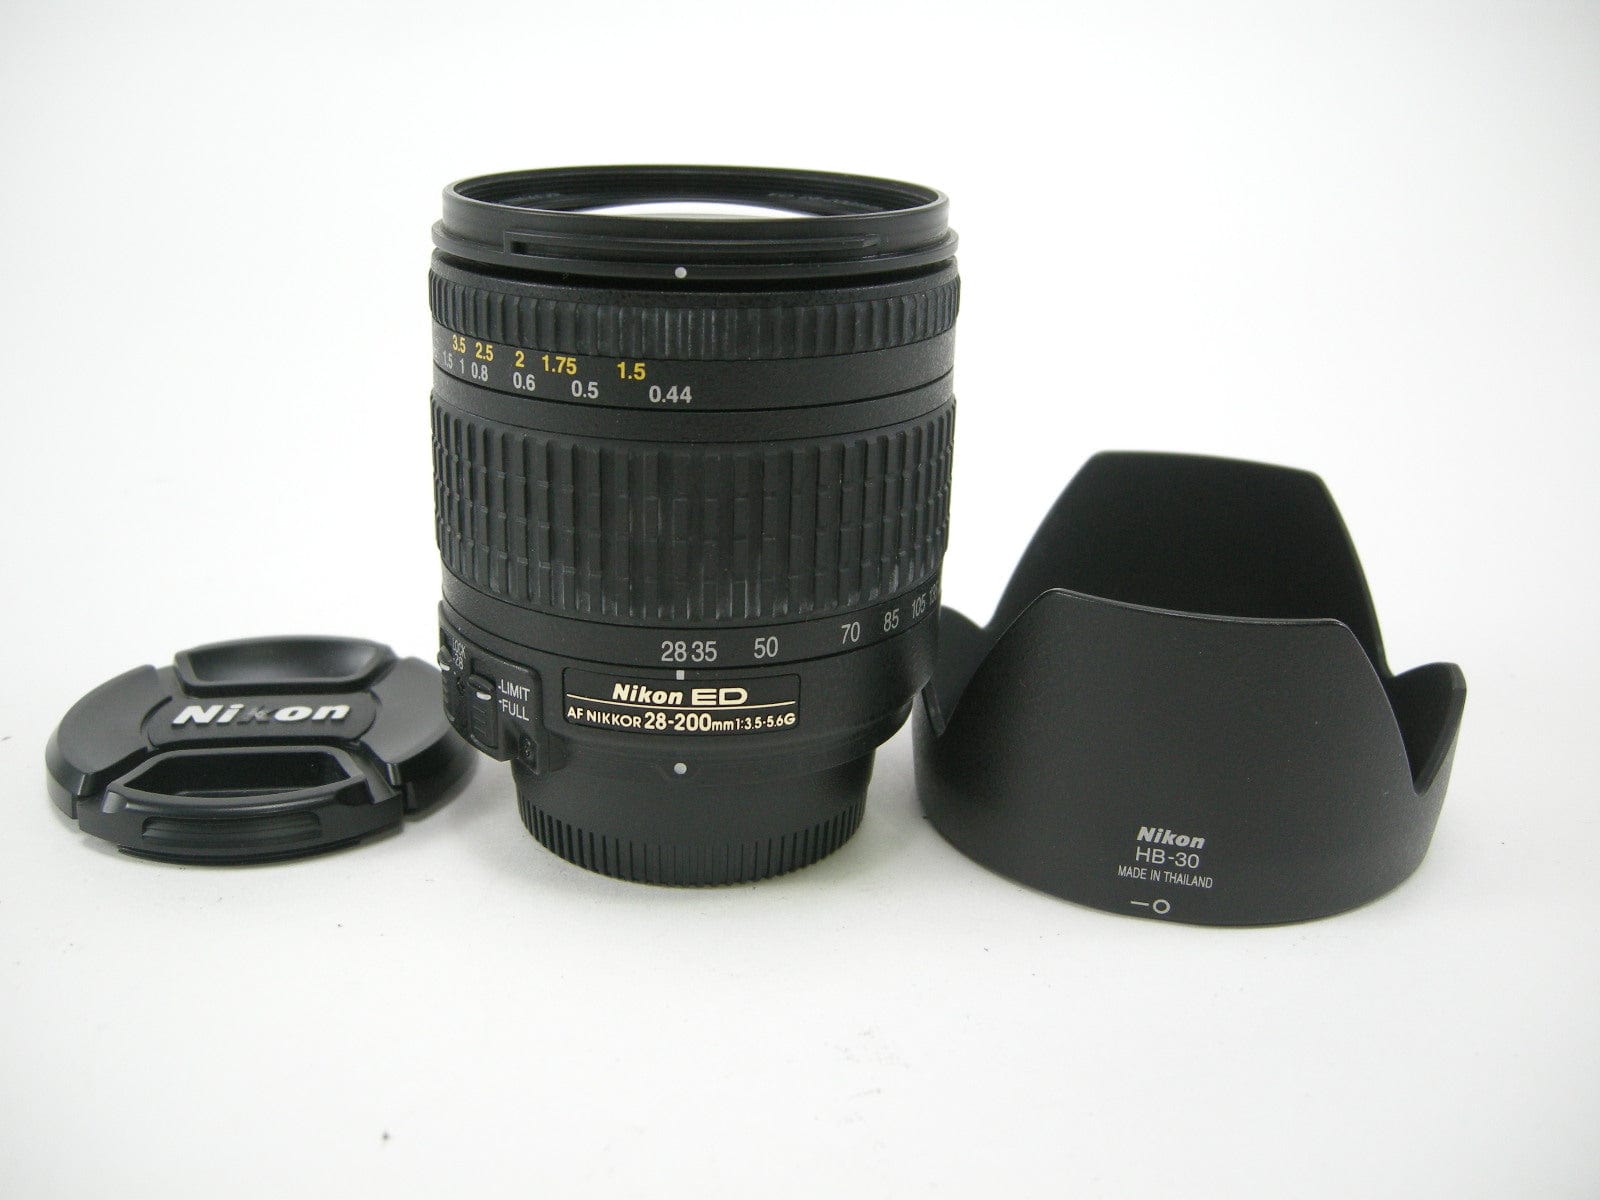 Nikon AF Nikkor ED 28-200mm f3.5-5.6G IF Lens